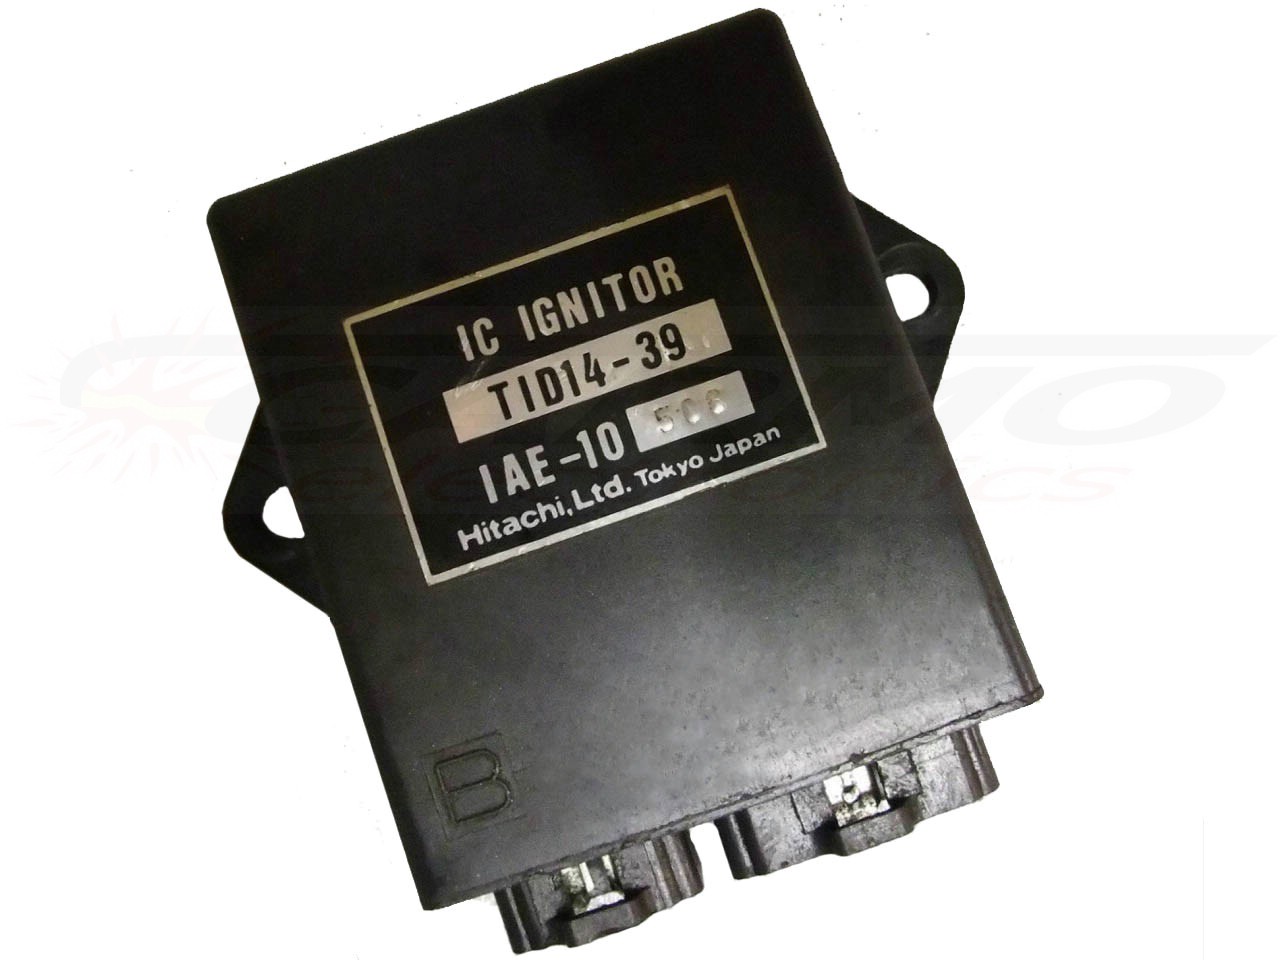 FZ700 FZ750 CDI igniter (TID14-39)